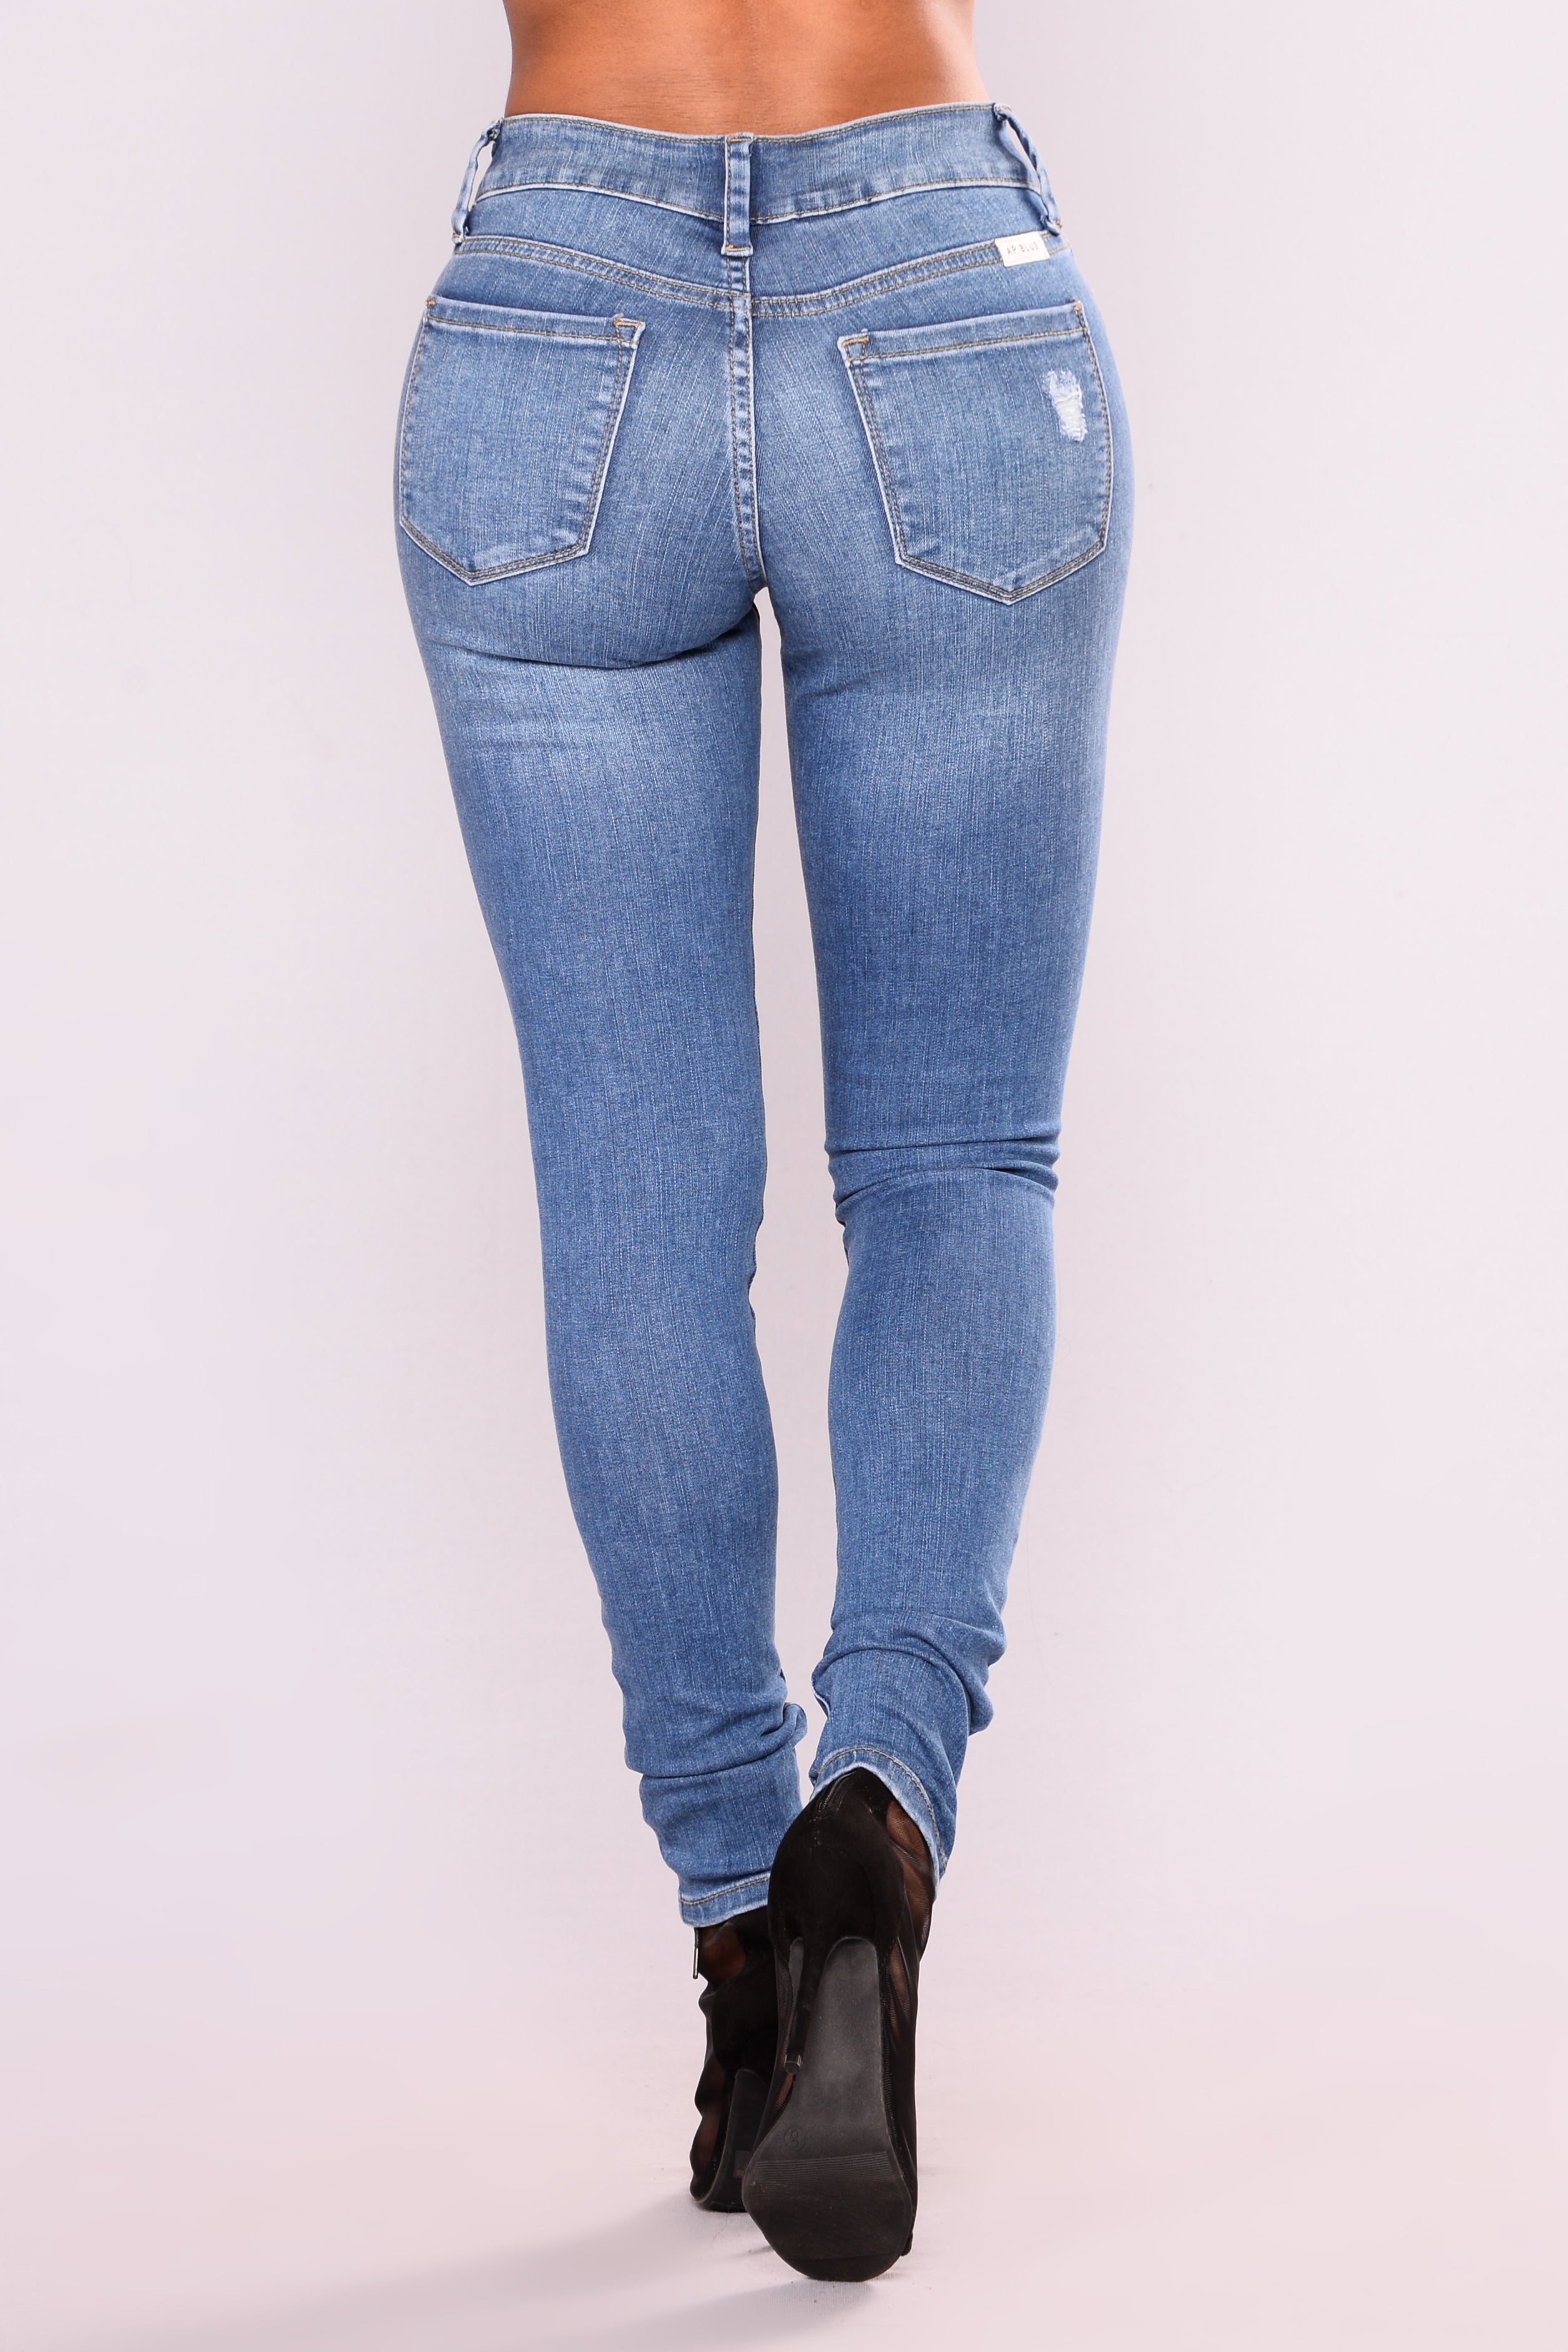 Araceli Skinny Jeans - Medium Blue Wash